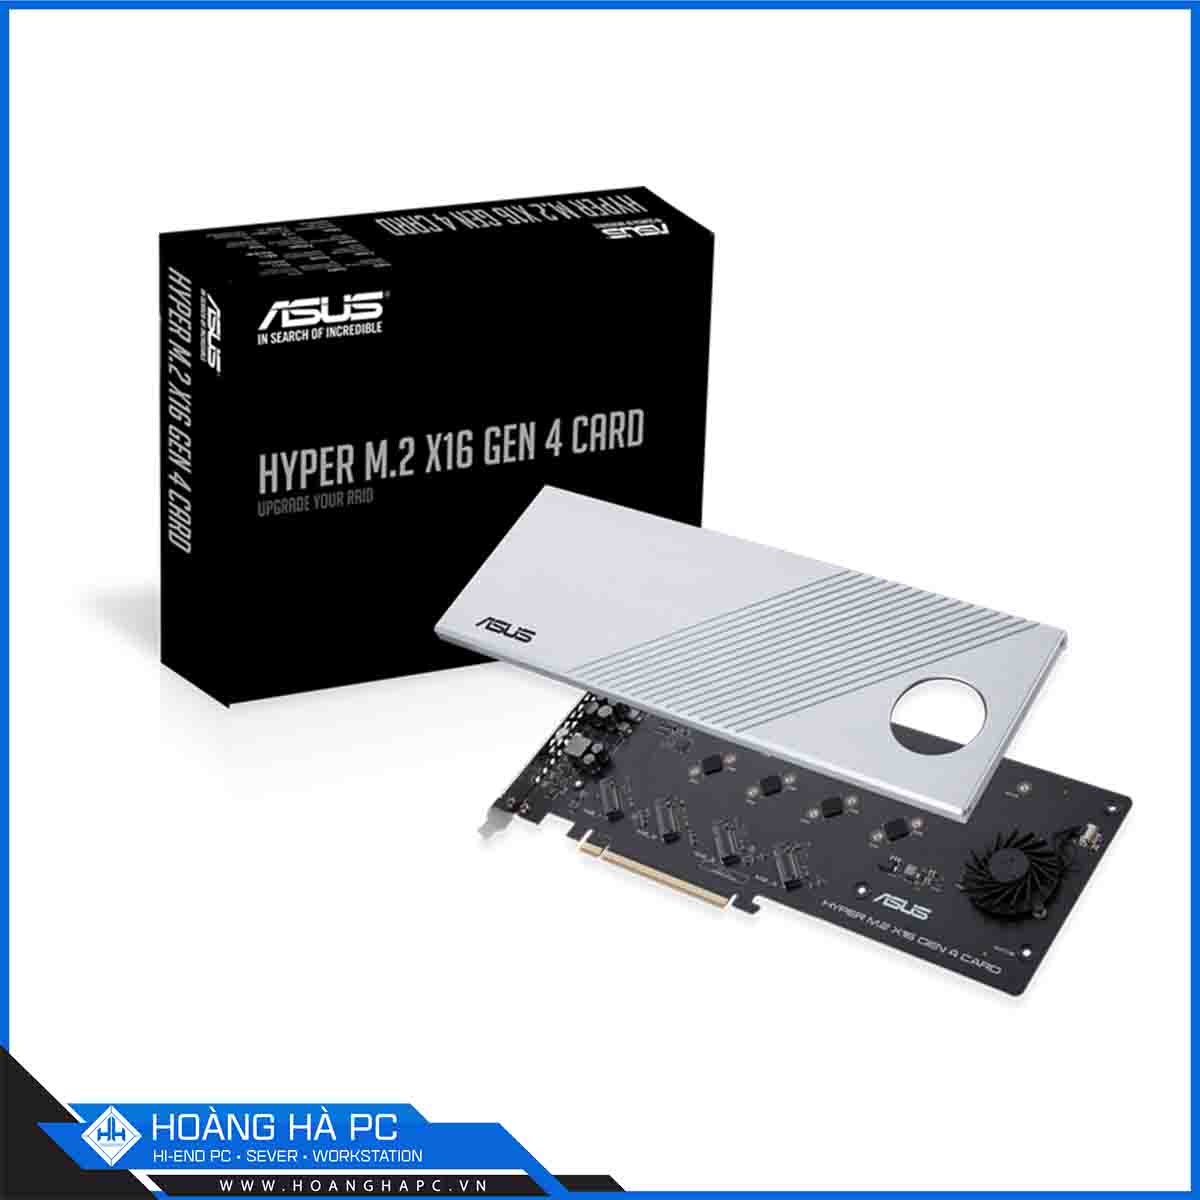 Card ASUS Hyper M.2 x16 Gen 4 